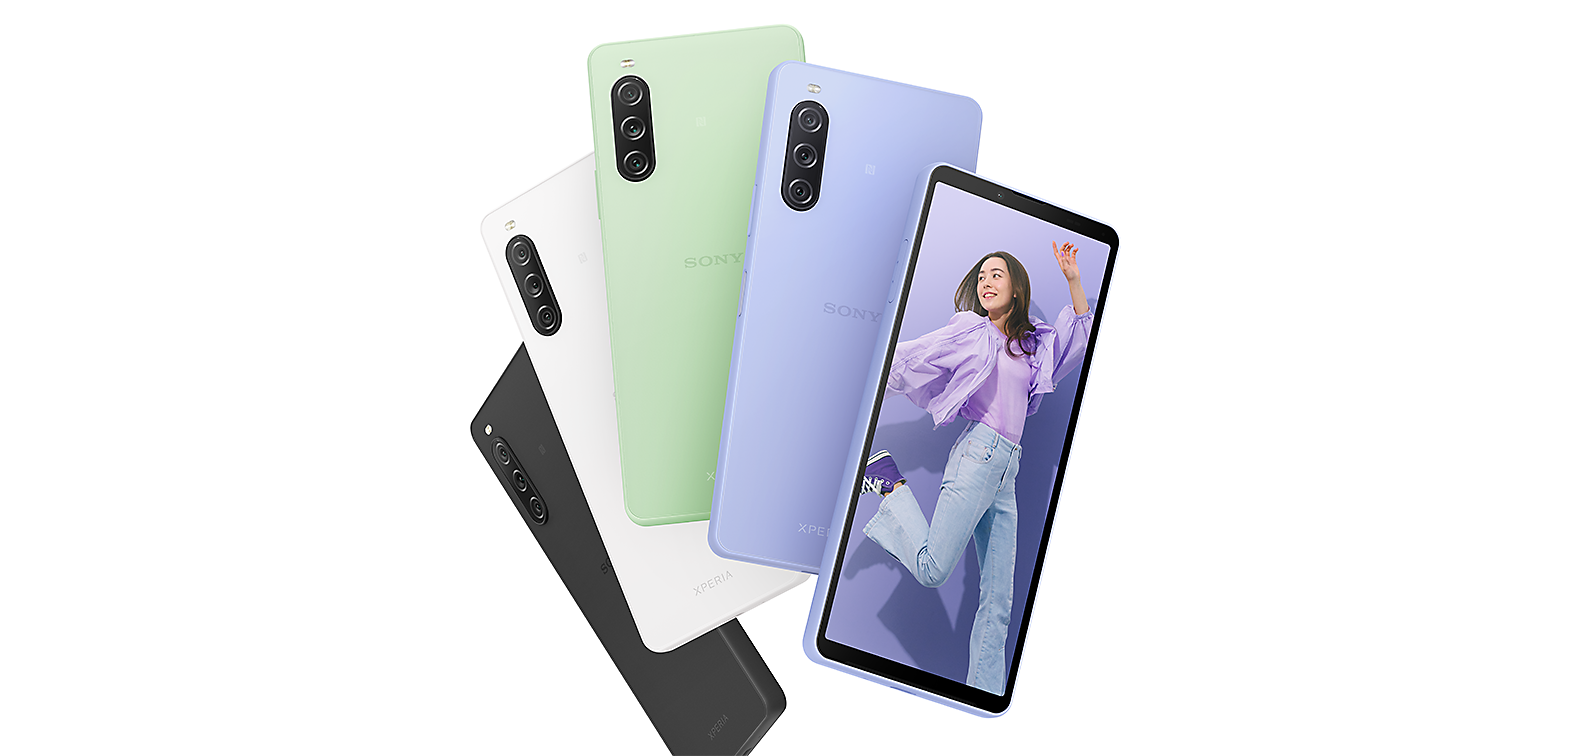 Vista posteriore di smartphone Xperia 10 V in nero, bianco, verde salvia e lavanda, oltre a un Xperia 10 V frontale color lavanda che mostra l'immagine di una ragazza